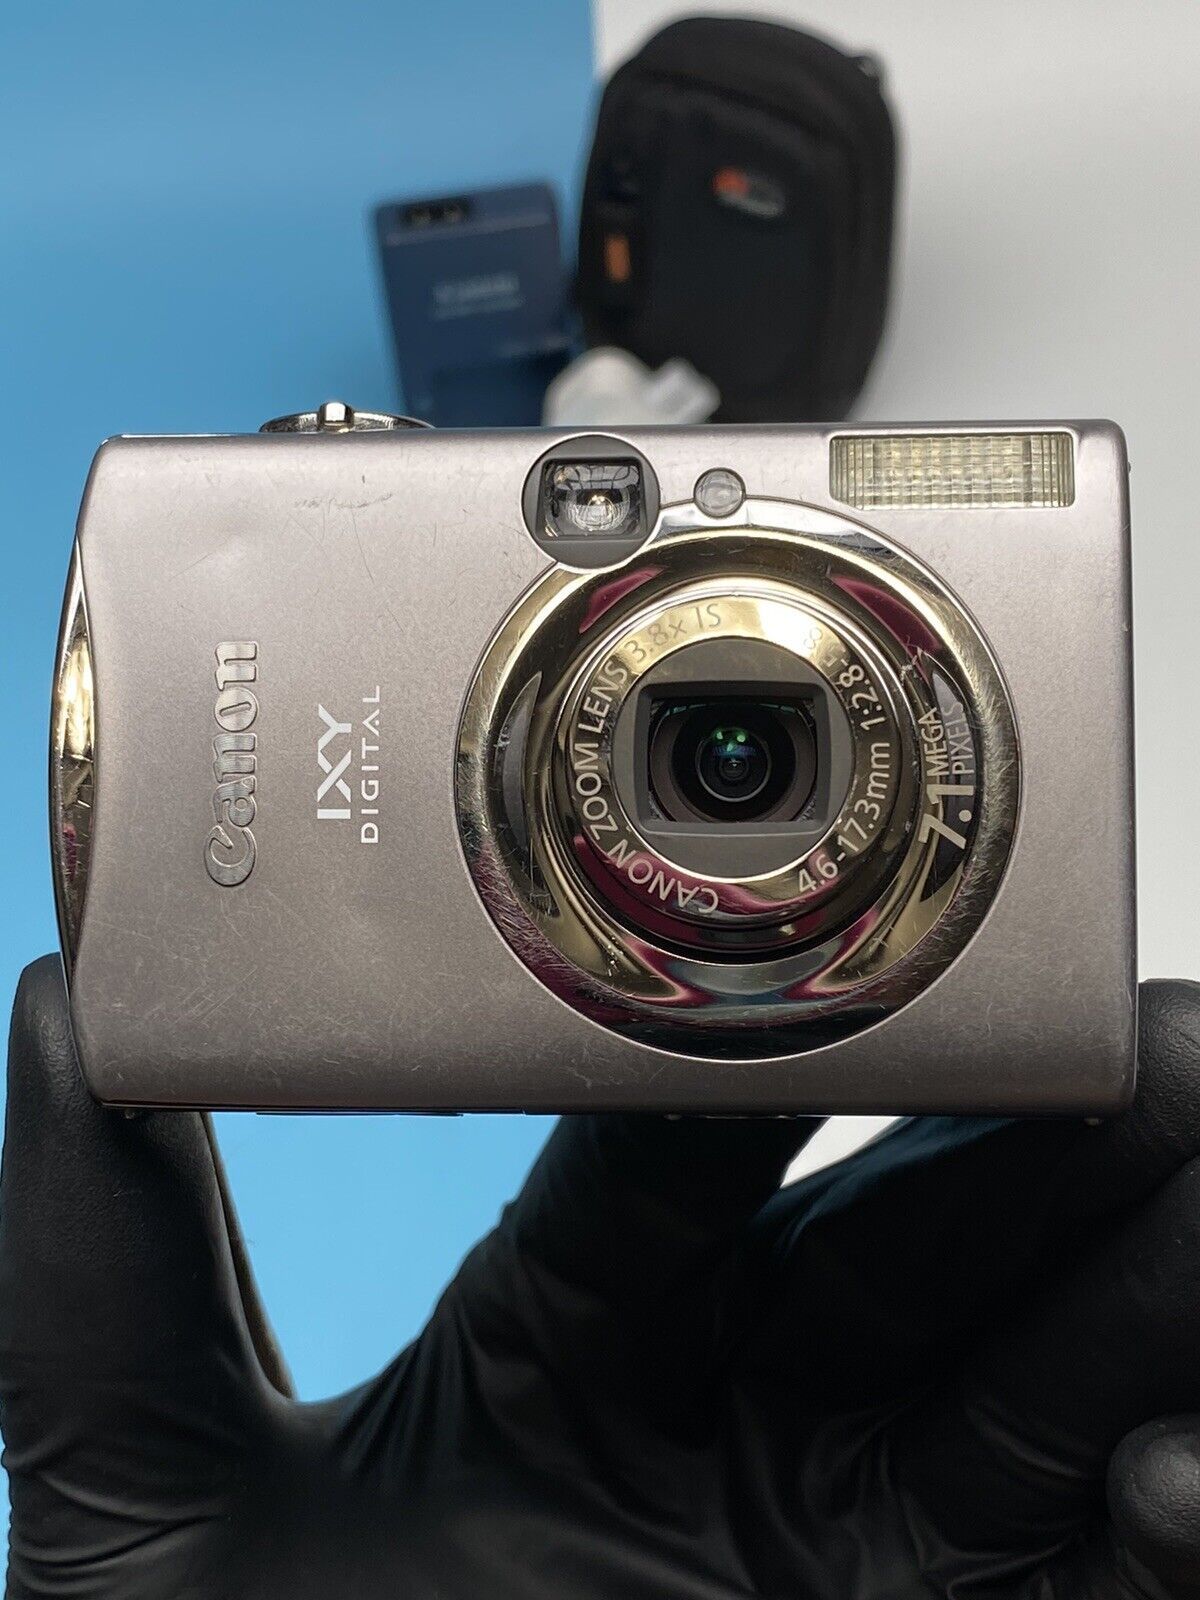 Canon IXY Digital 900 IS 7.1 MP Digital Camera - Silver